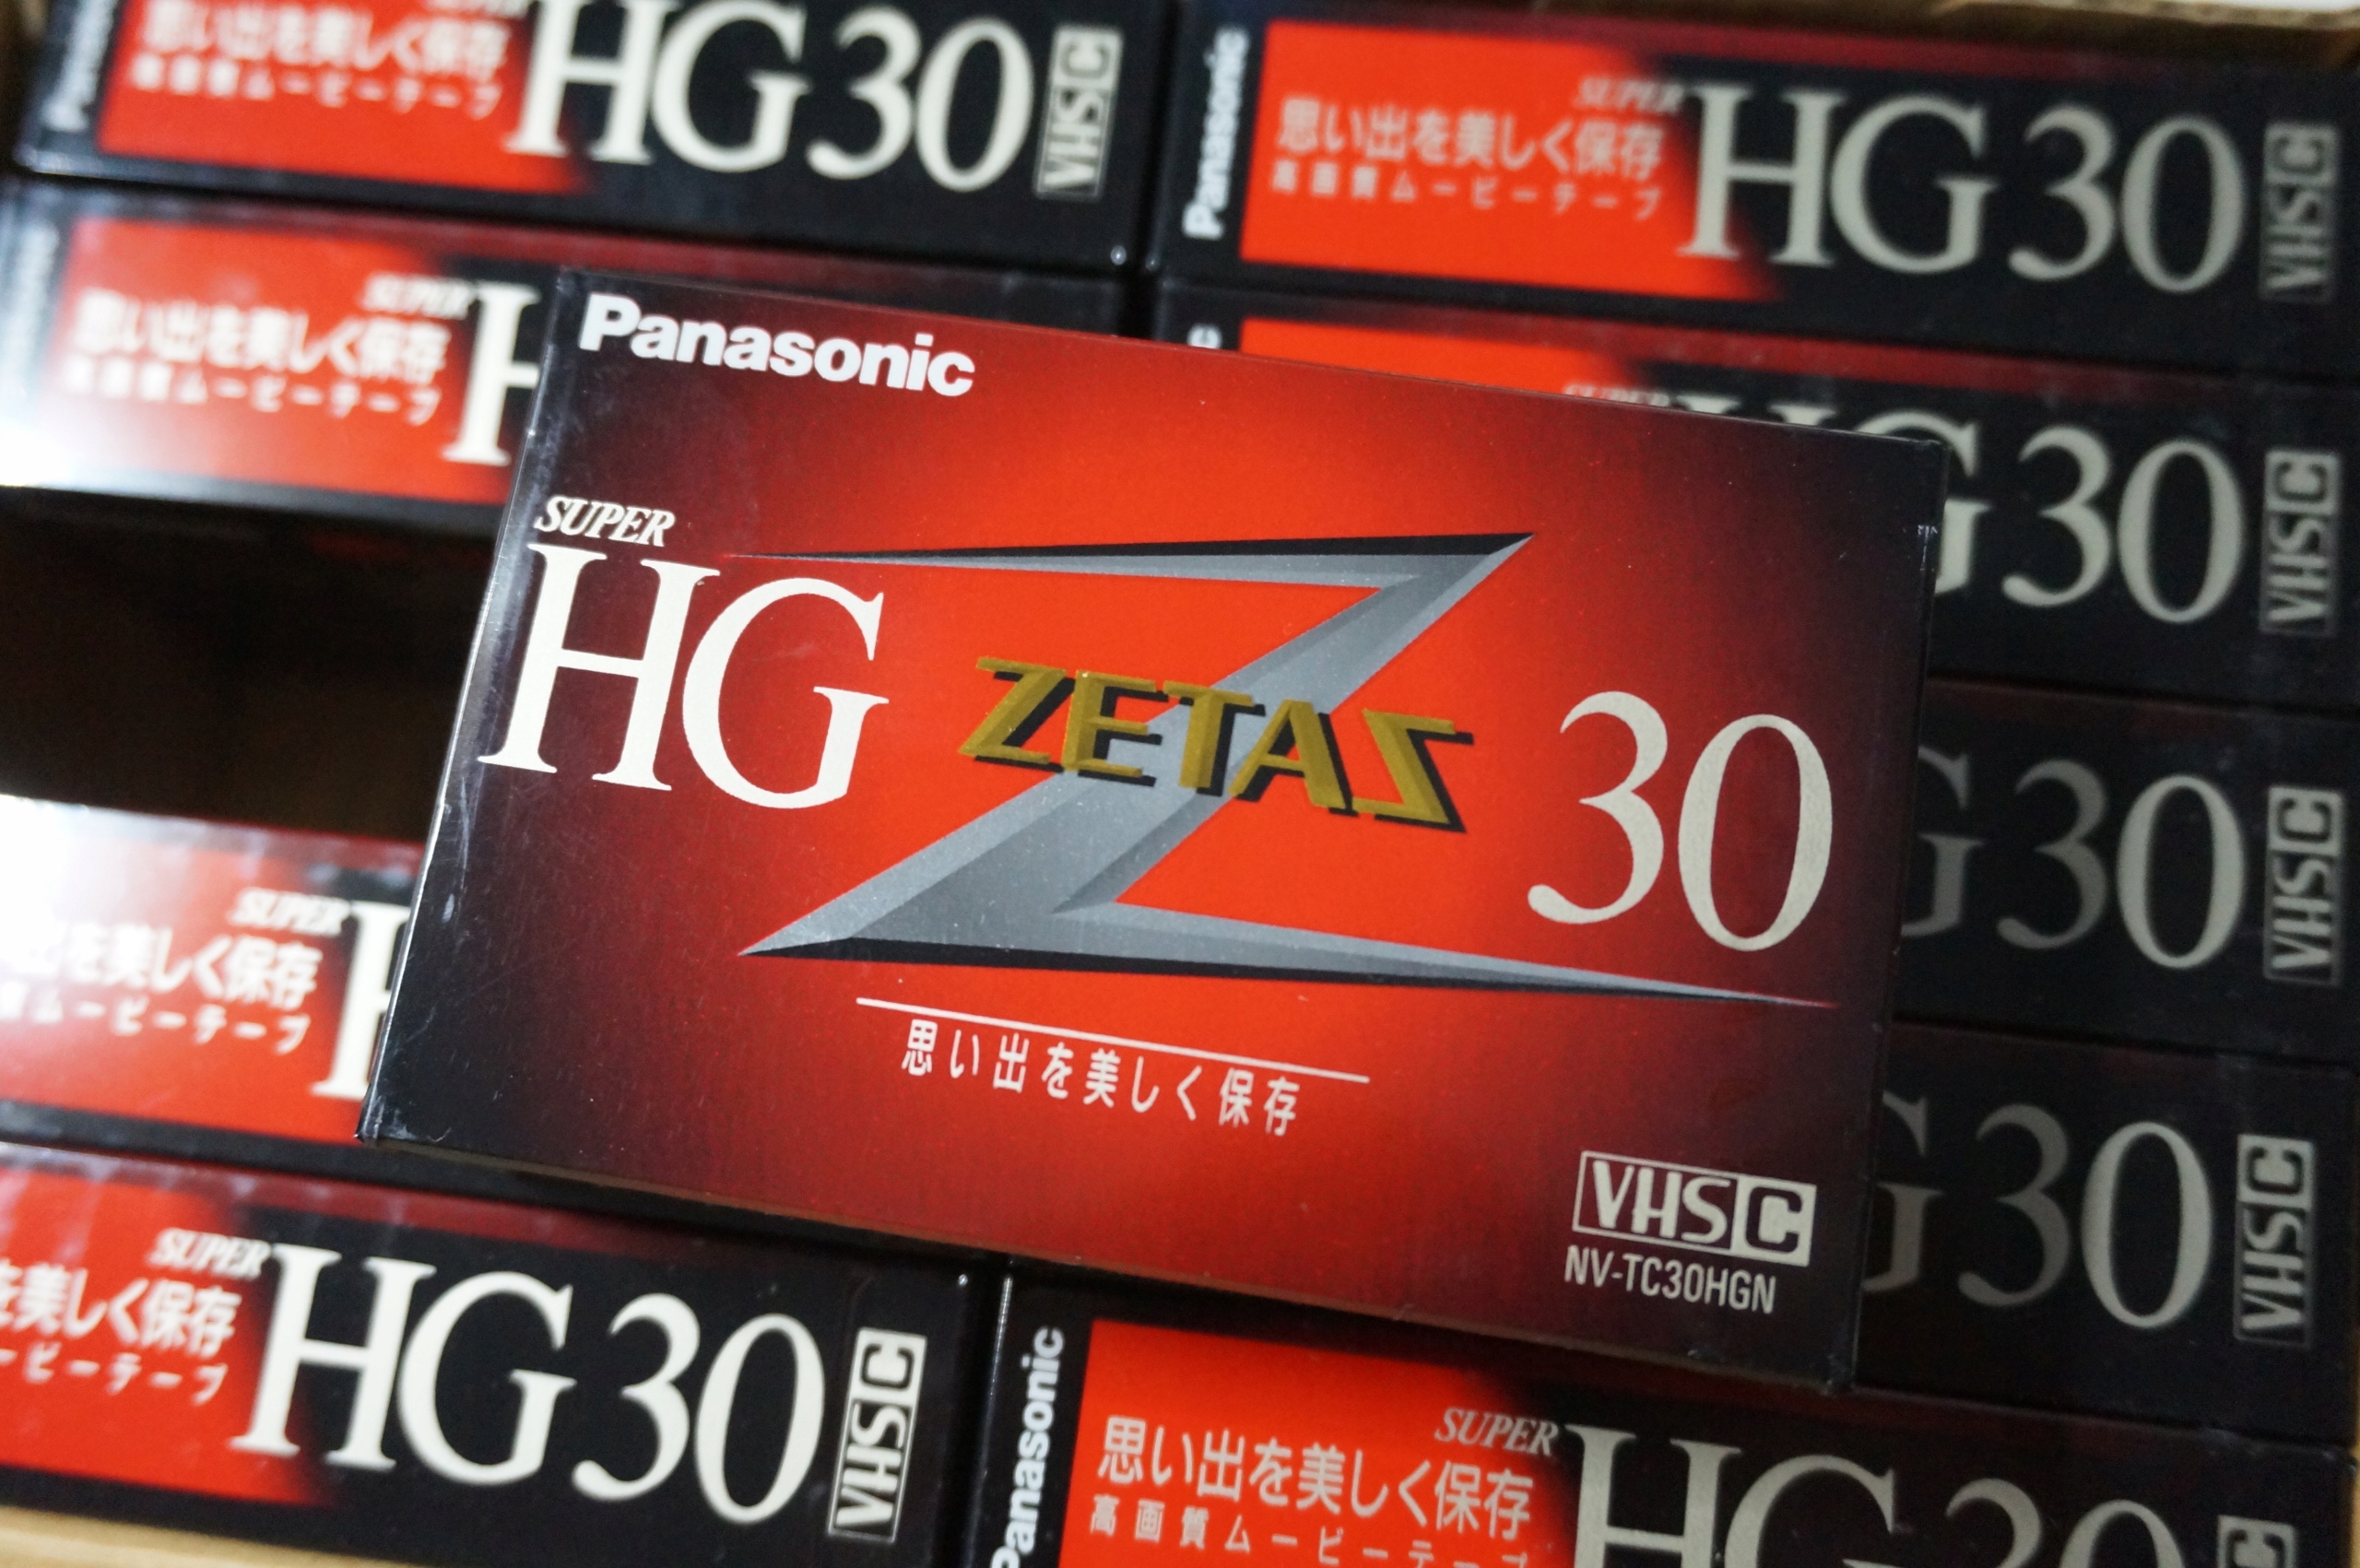 KAZETA PRE VHS-C kamery Panasonic ZETAS HV-TC30HGN 30/90 min